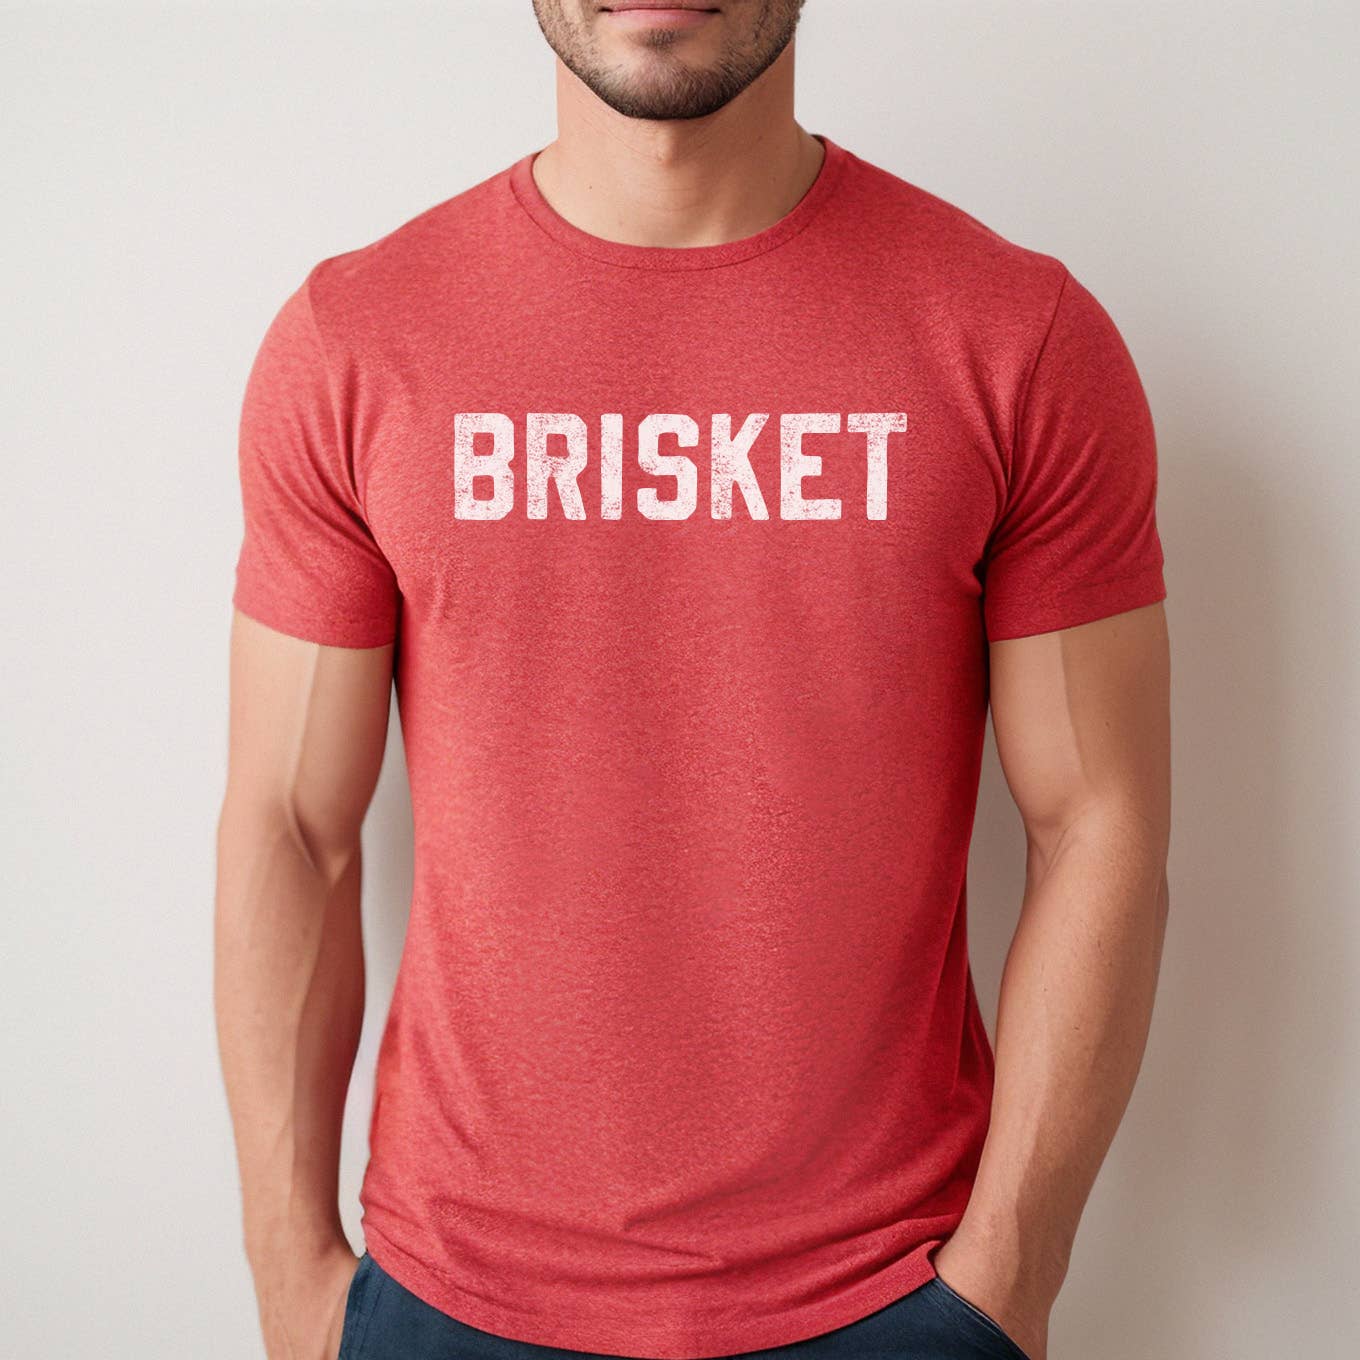 Brisket Tshirt